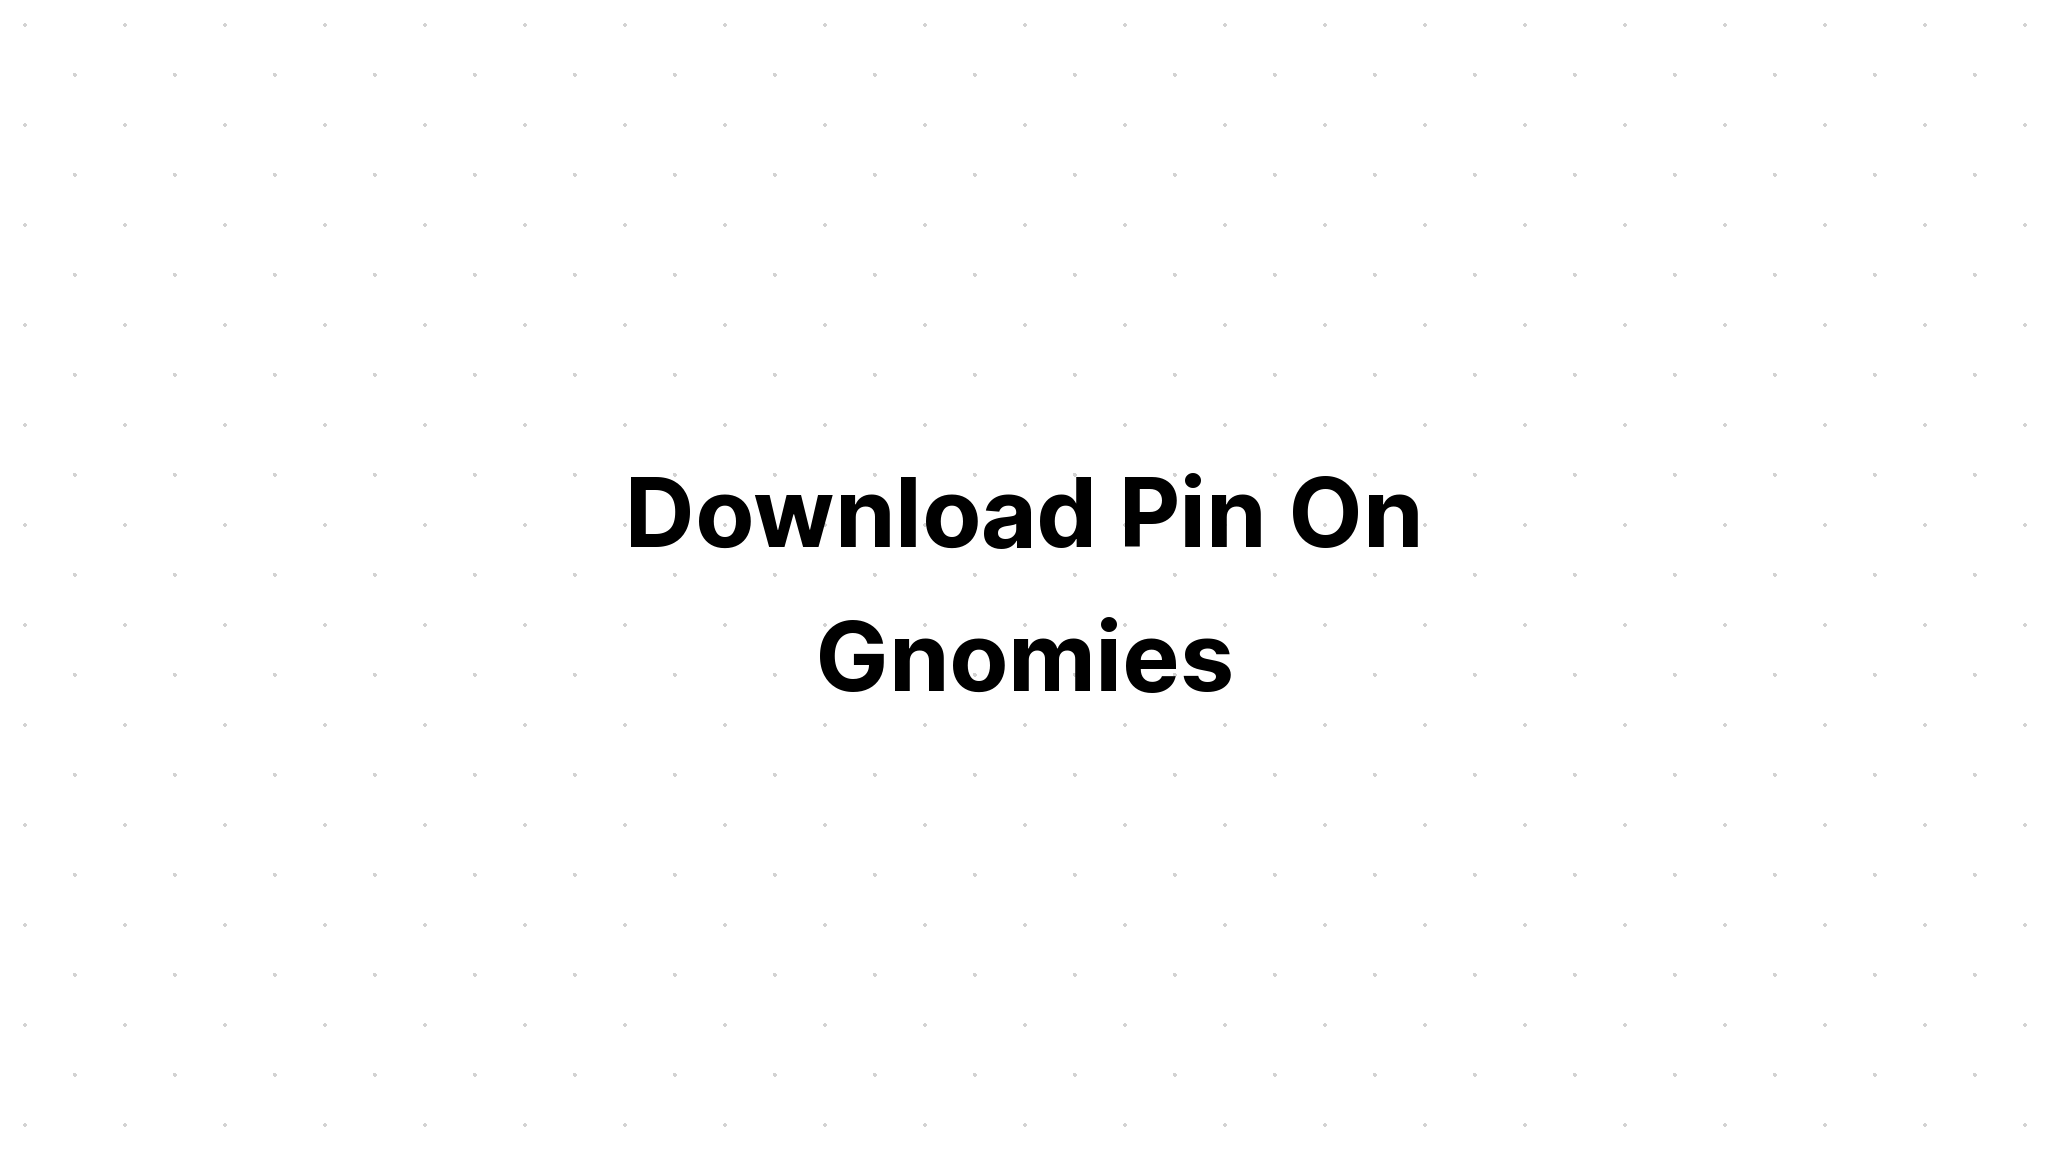 Download Valentine's Day Svg Love Gnome Retro SVG File